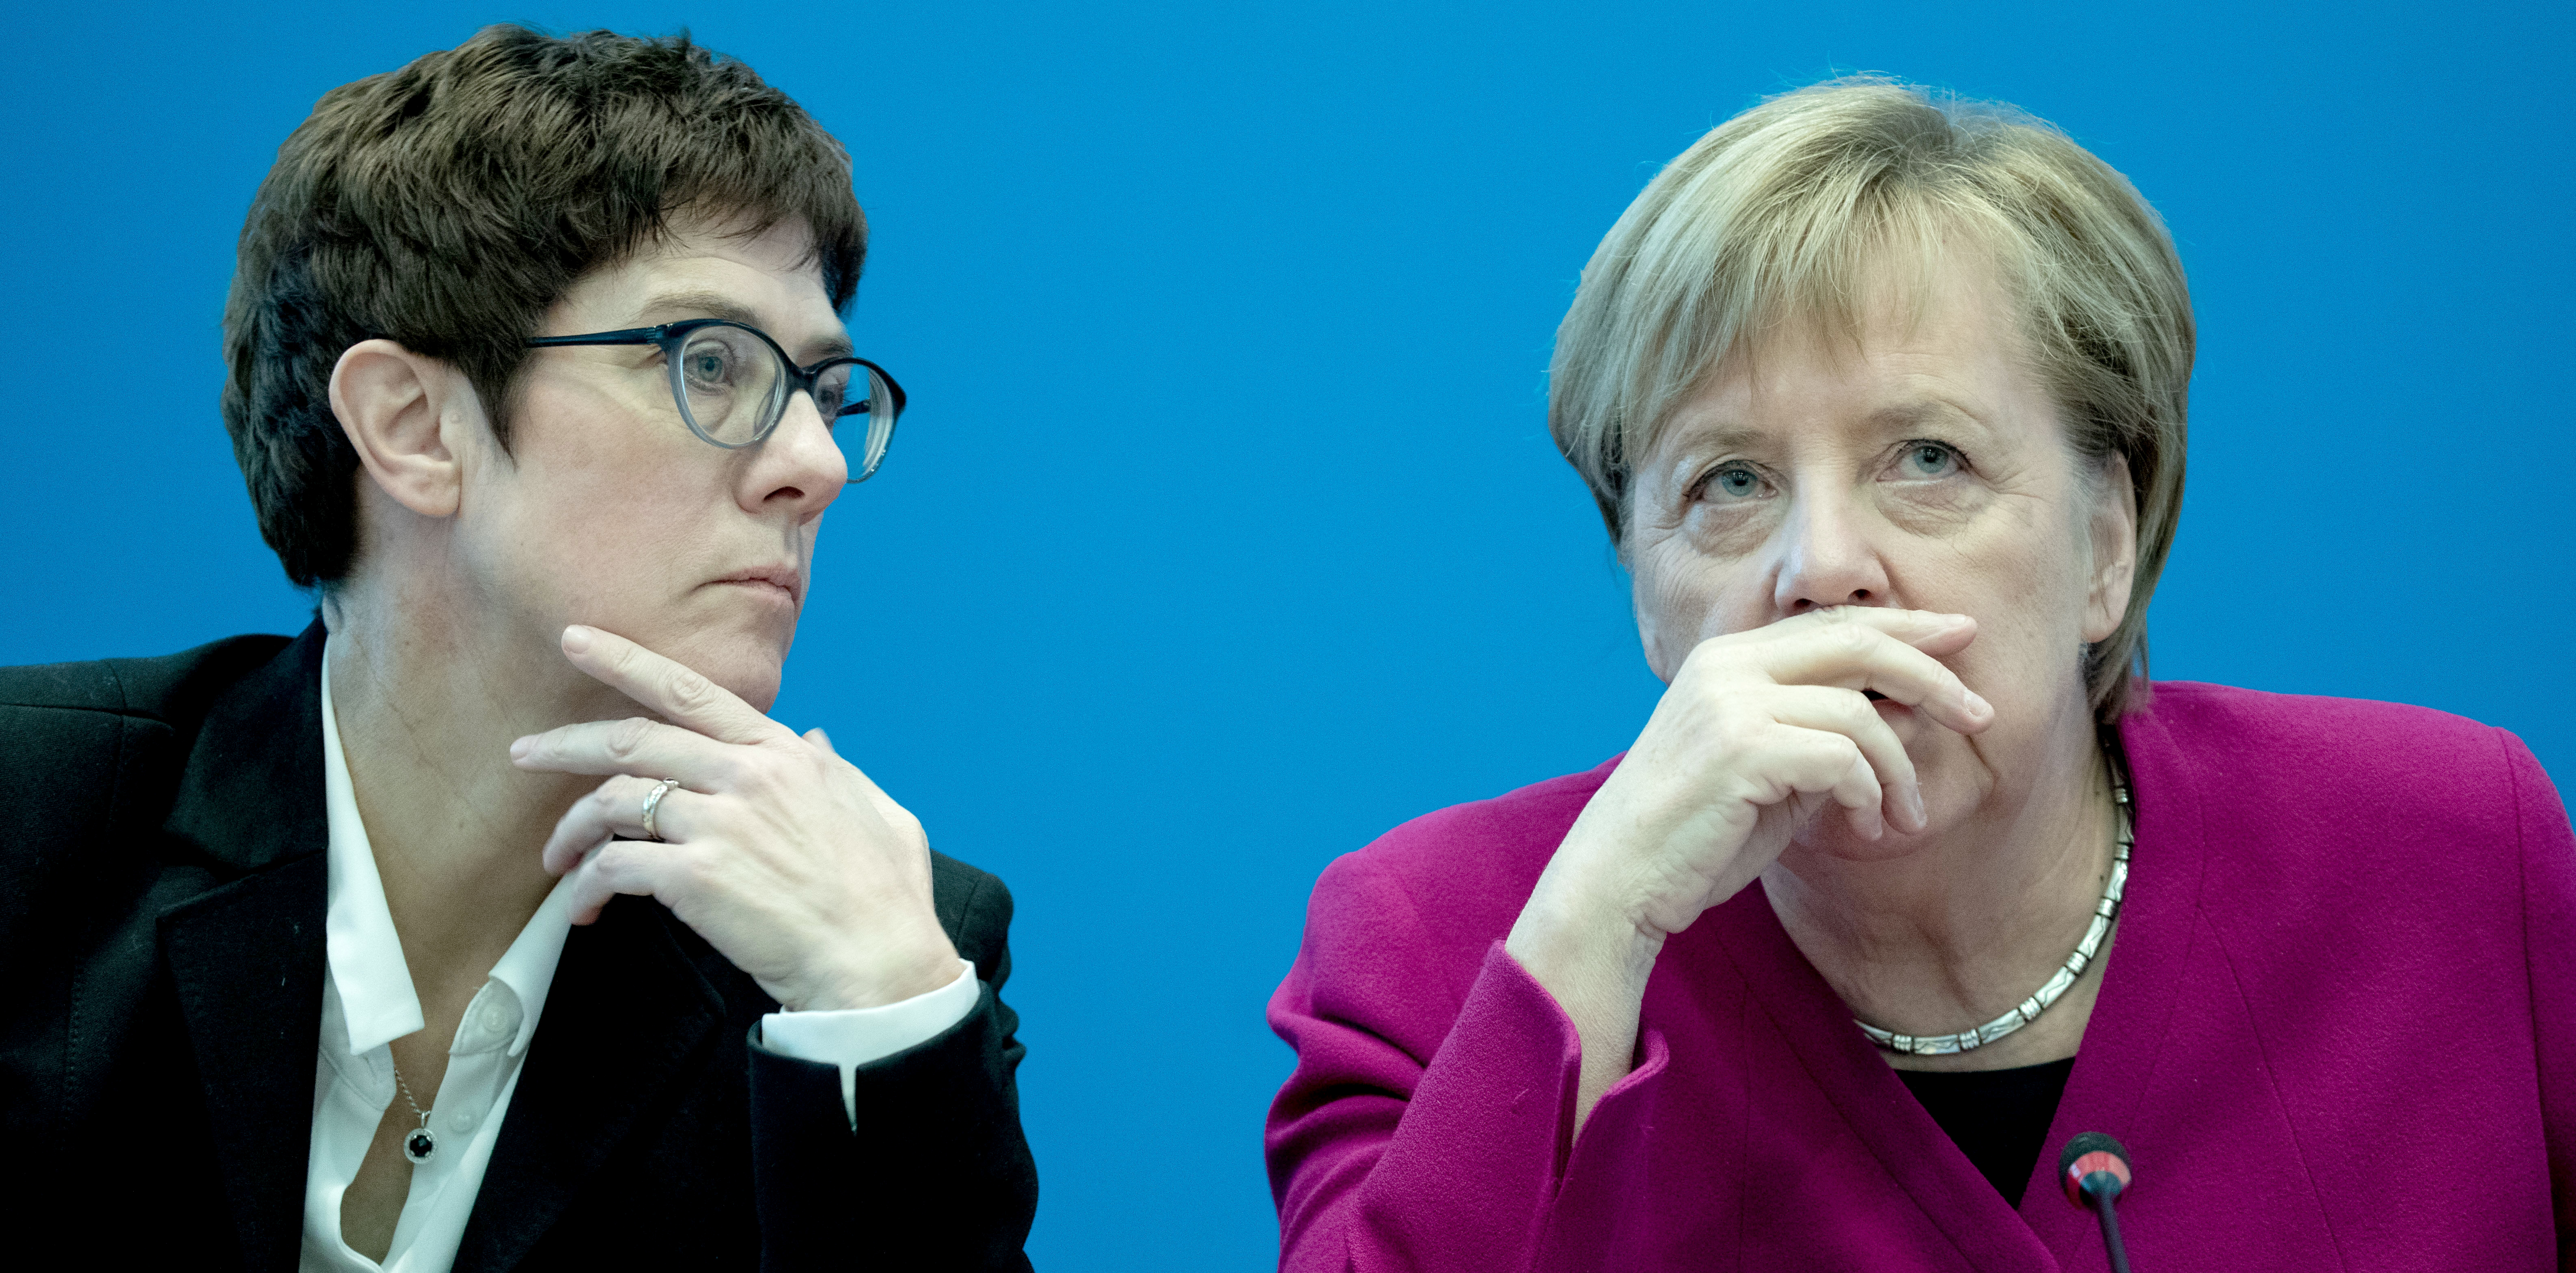 Az eddigi főtitkár Annegret Kramp-Karrenbauer válthatja Merkelt a CDU élén